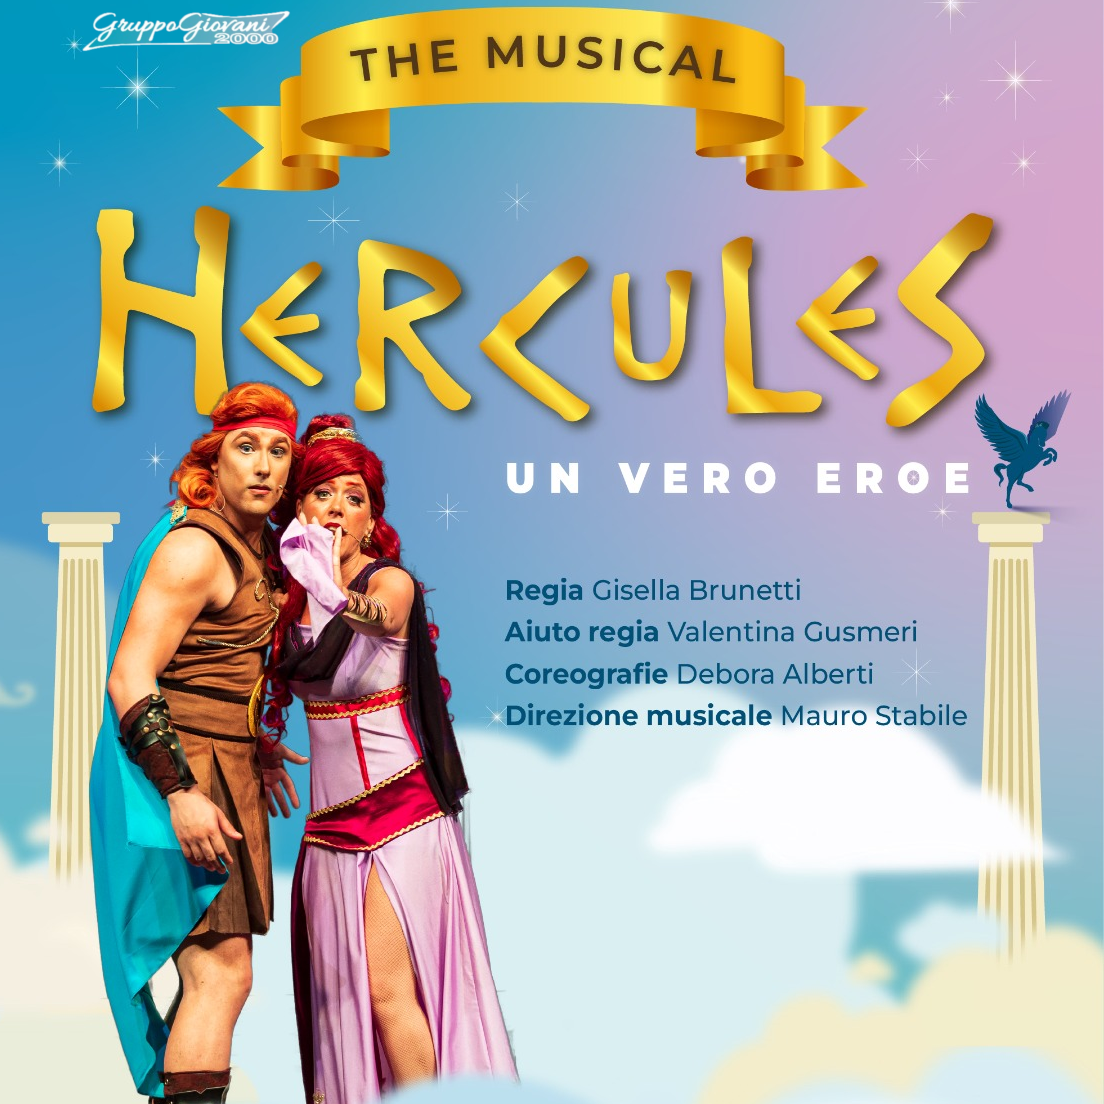 Hercules, il Gruppo Giovani 2000 porta in scena il musical. Appuntamento al Dis_Play domenica 21 alle 16.30